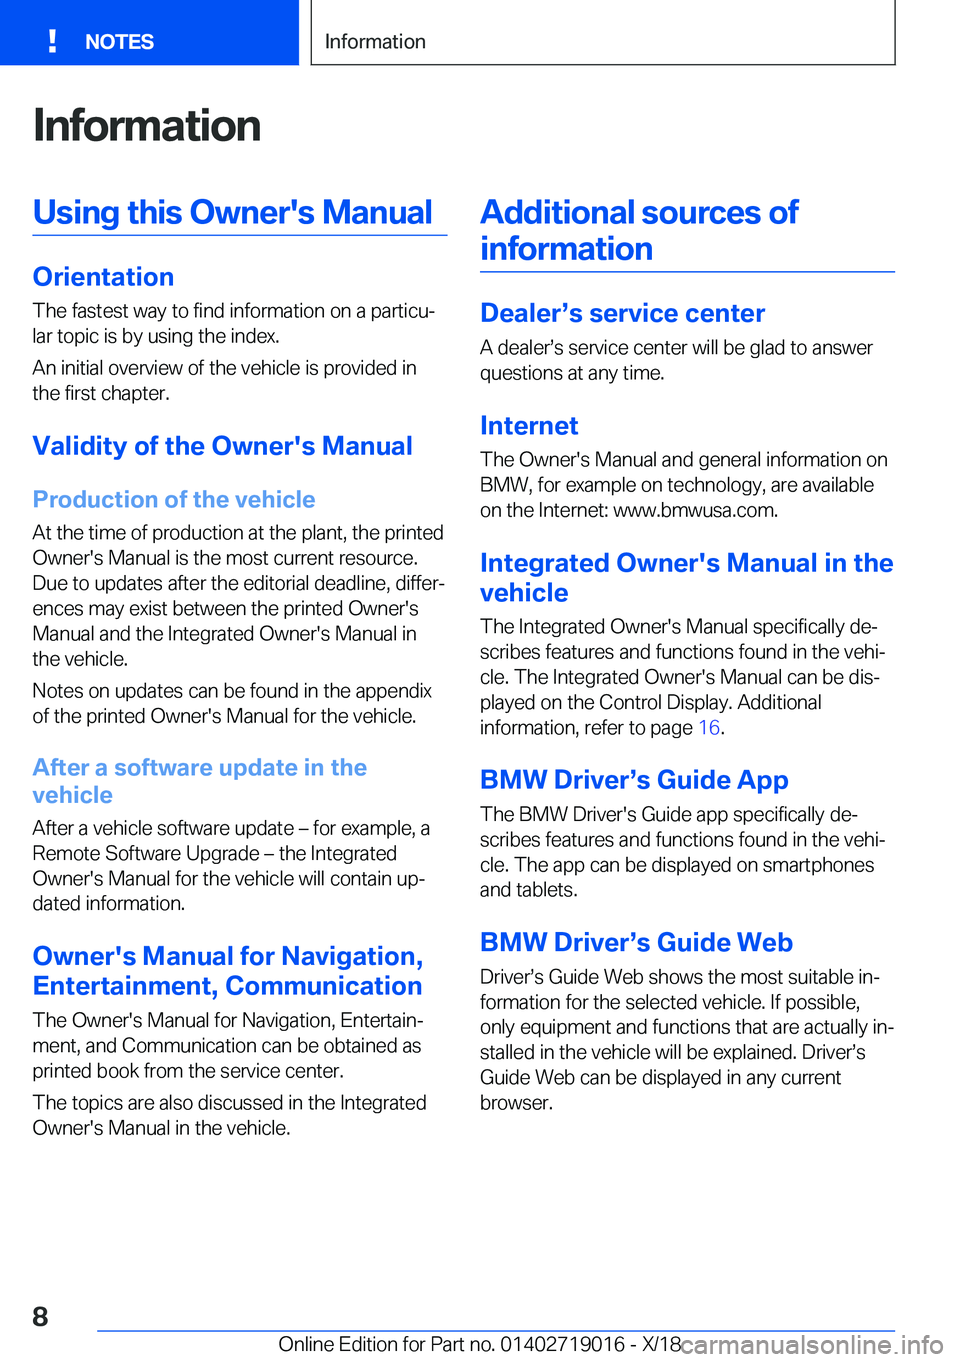 BMW Z4 2019  Owners Manual �I�n�f�o�r�m�a�t�i�o�n�U�s�i�n�g��t�h�i�s��O�w�n�e�r�'�s��M�a�n�u�a�l
�O�r�i�e�n�t�a�t�i�o�n�T�h�e��f�a�s�t�e�s�t��w�a�y��t�o��f�i�n�d��i�n�f�o�r�m�a�t�i�o�n��o�n��a��p�a�r�t�i�c�uj�l�